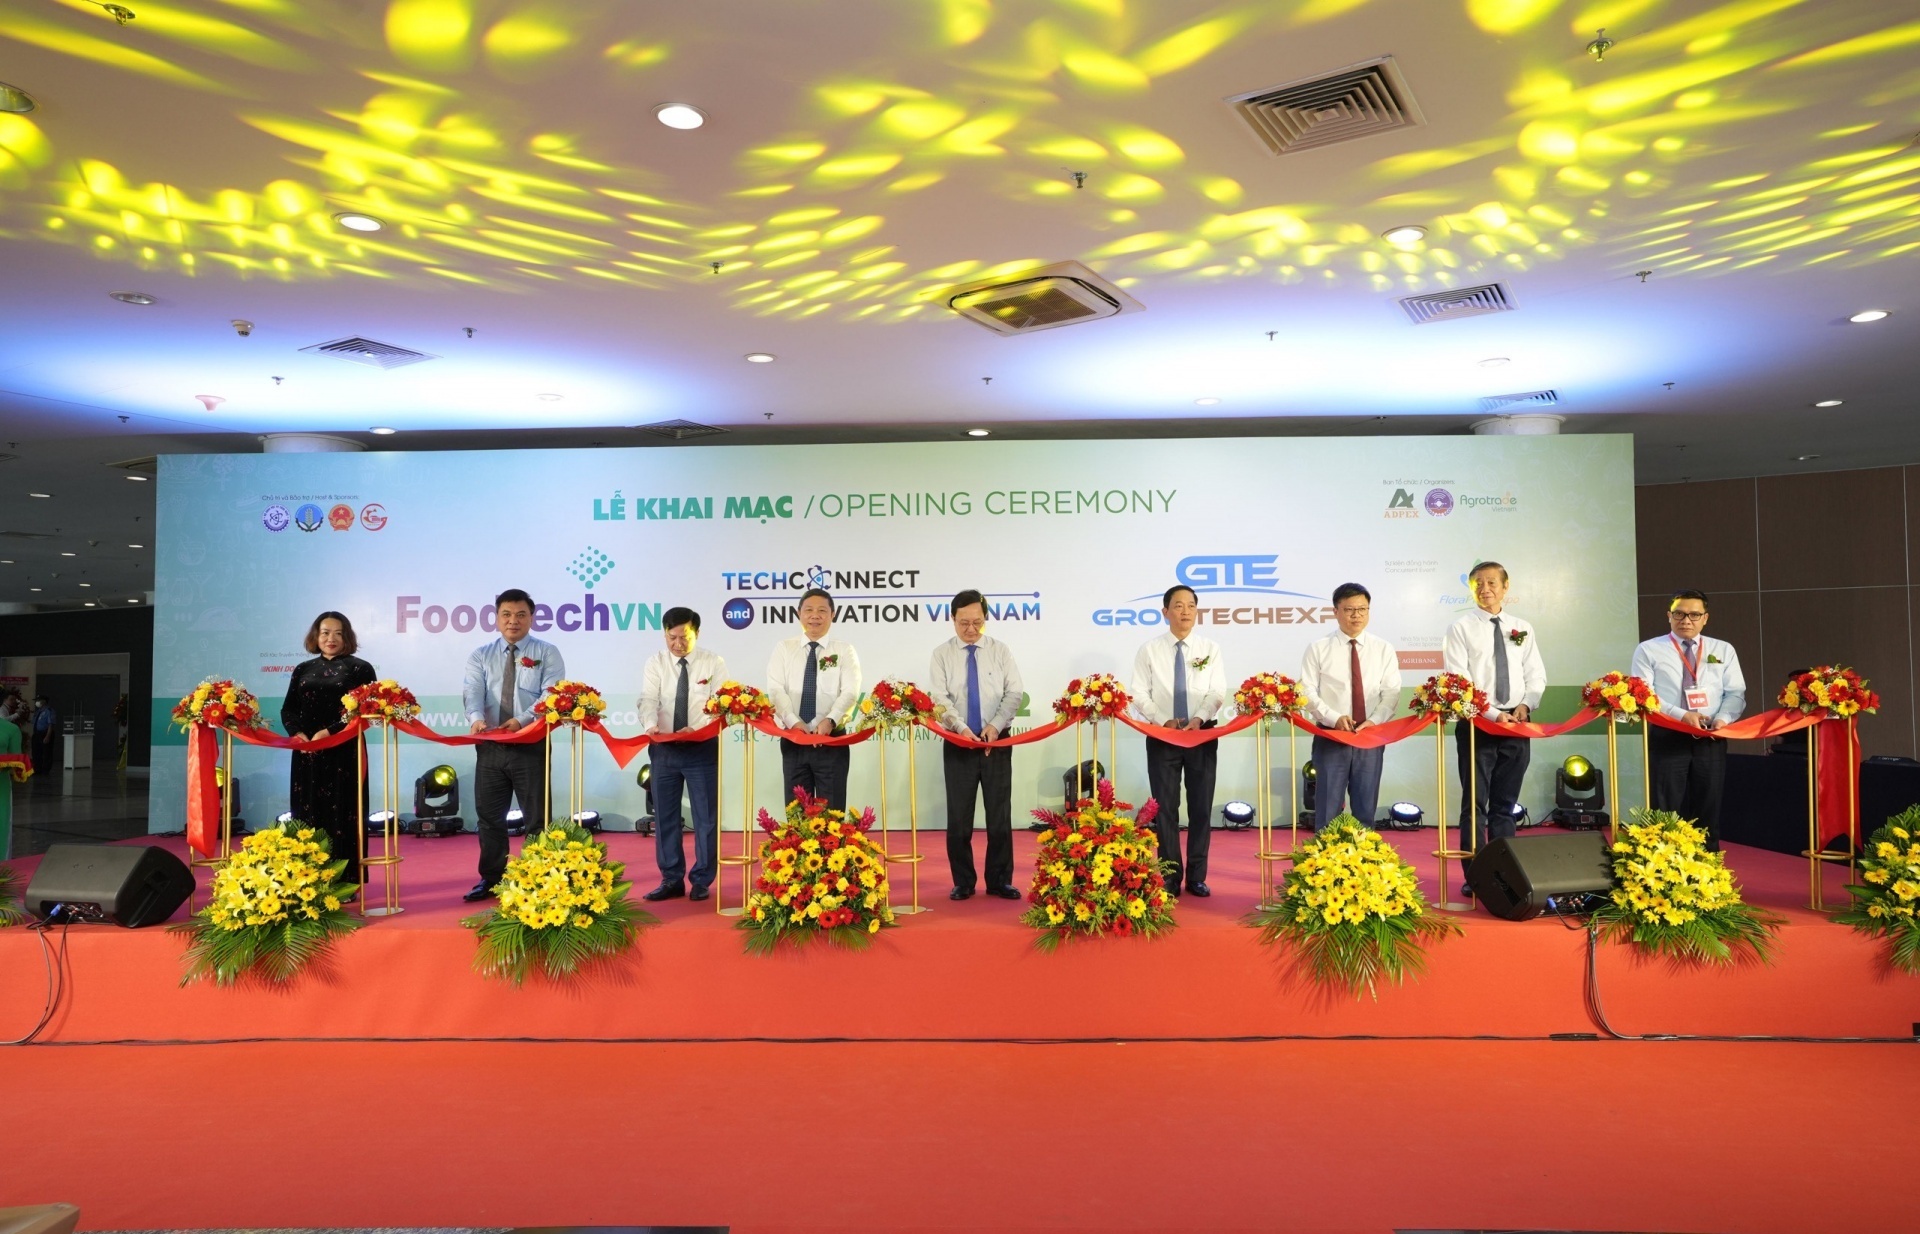 Vietnam FoodTech & GrowTech 2022 promotes cutting-edge technology